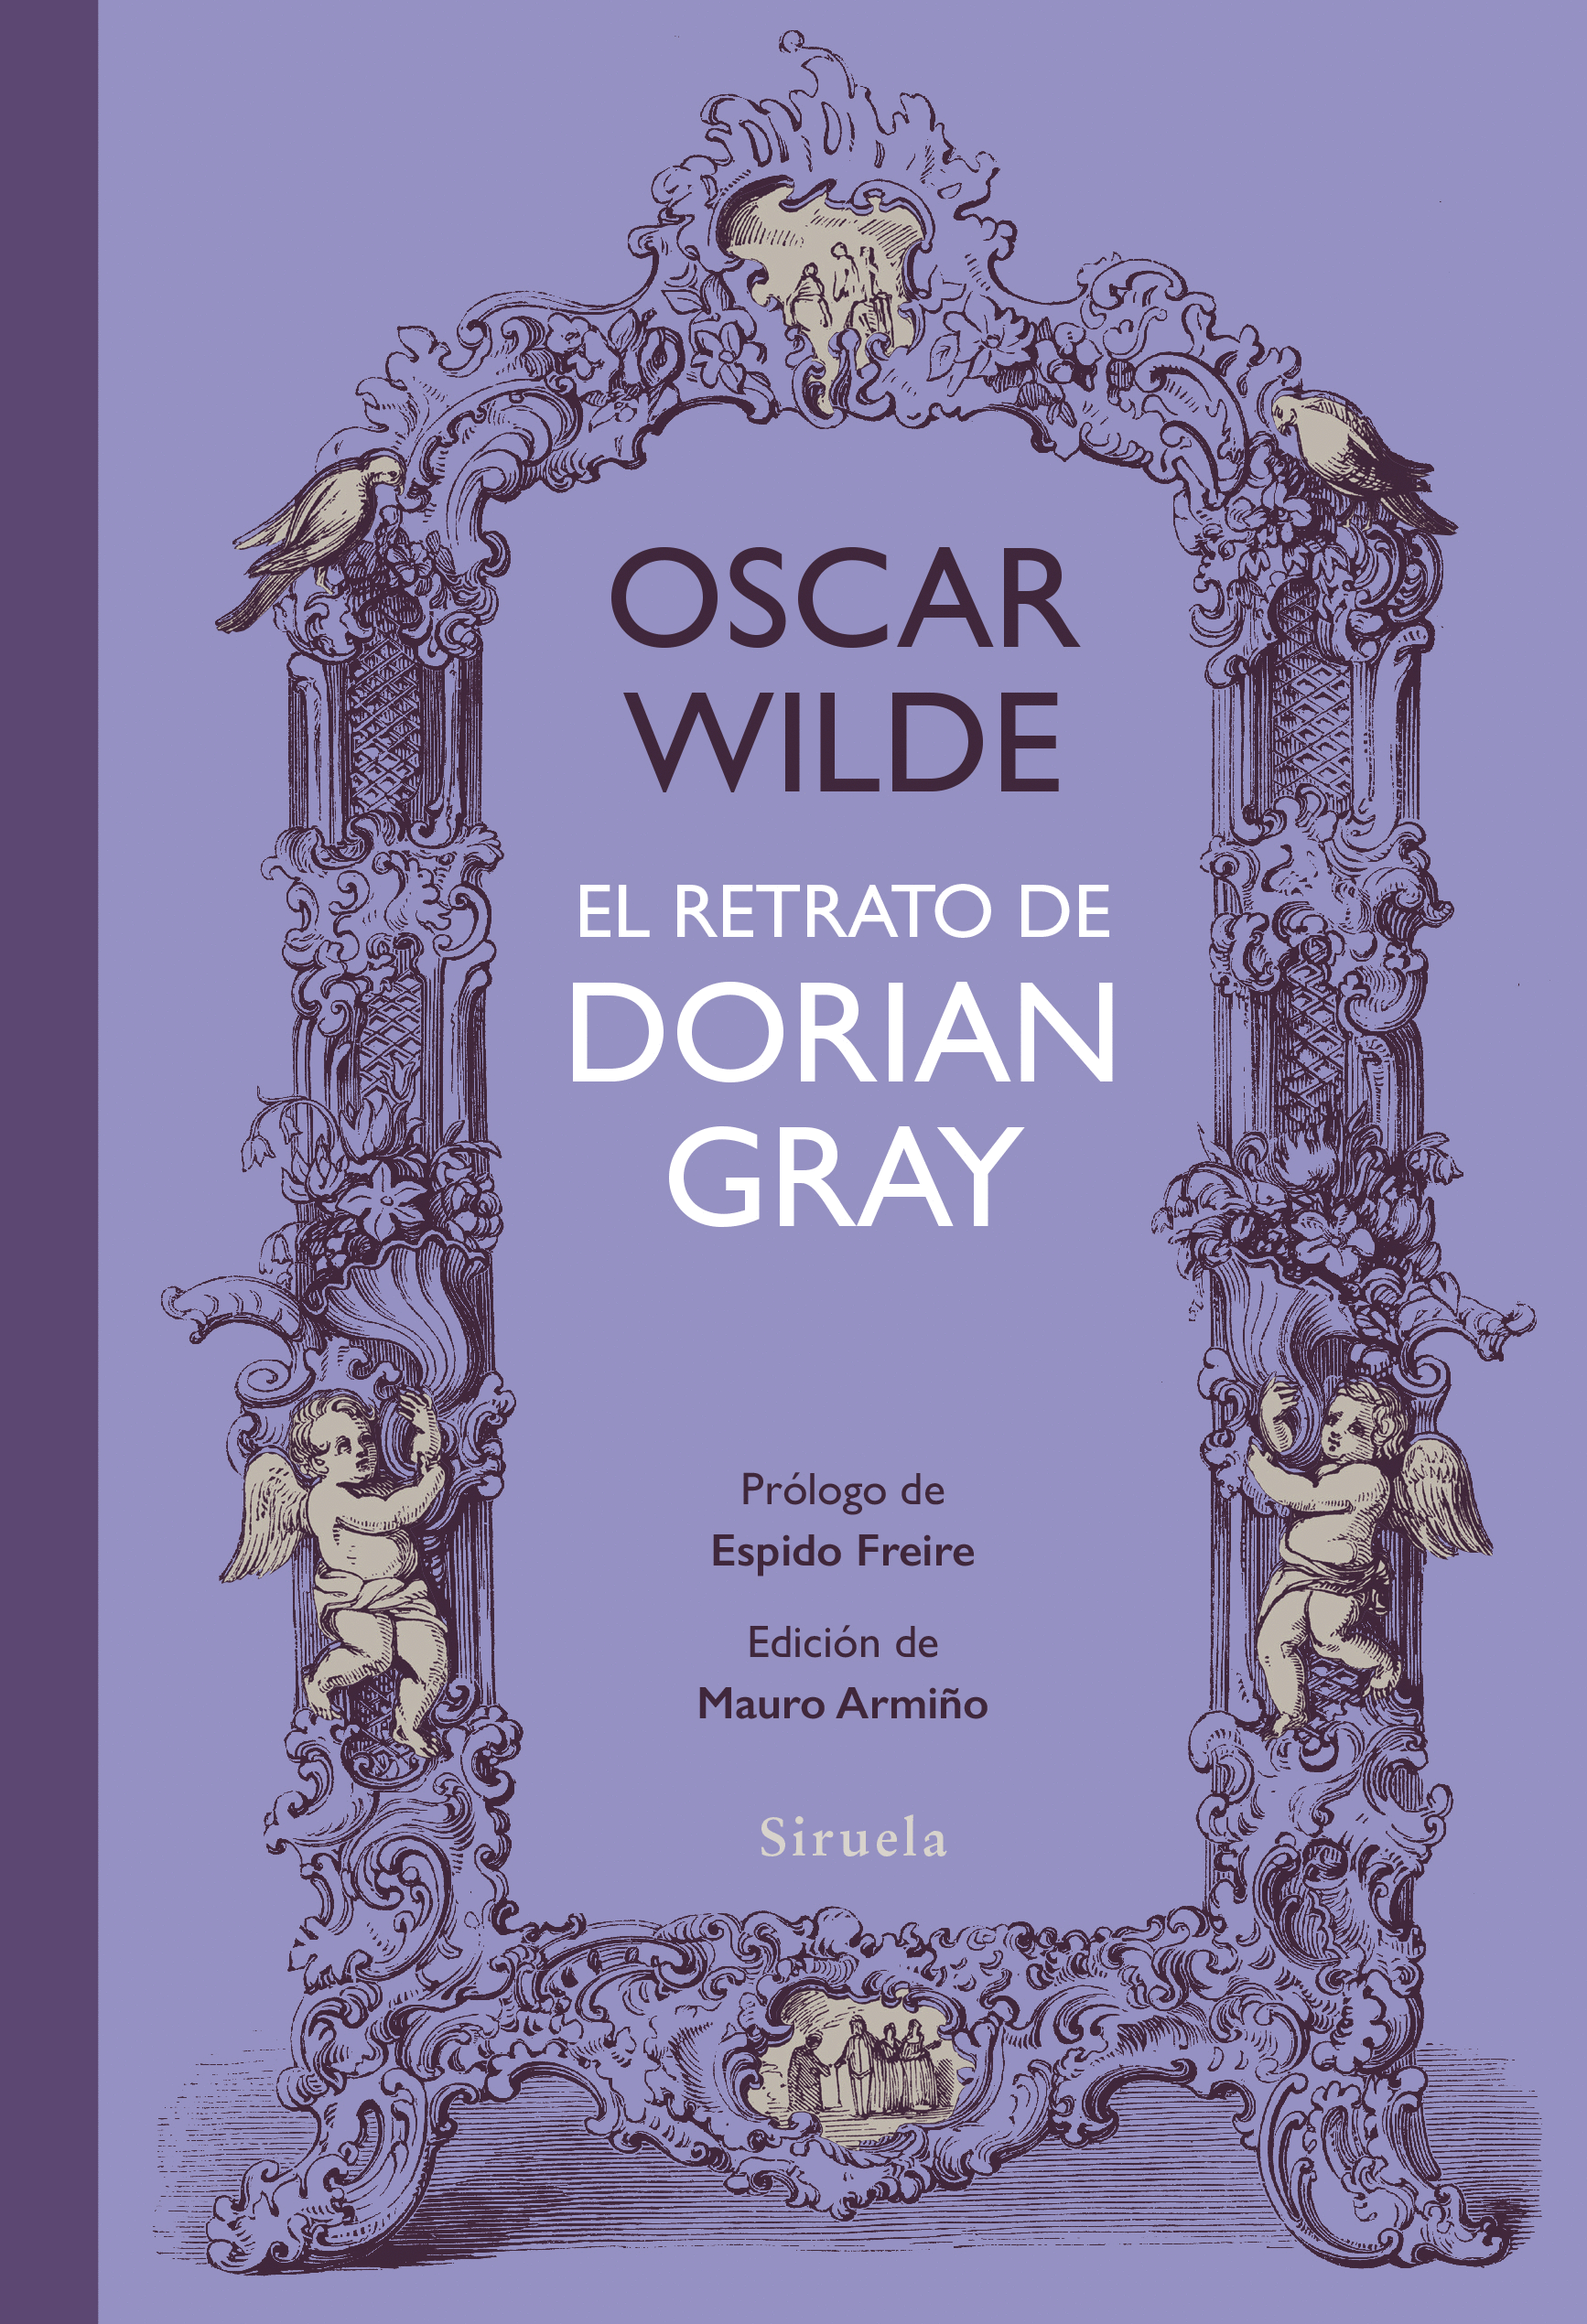 Retrato de Dorian Gray, El. Wilde, Oscar. Libro en papel 